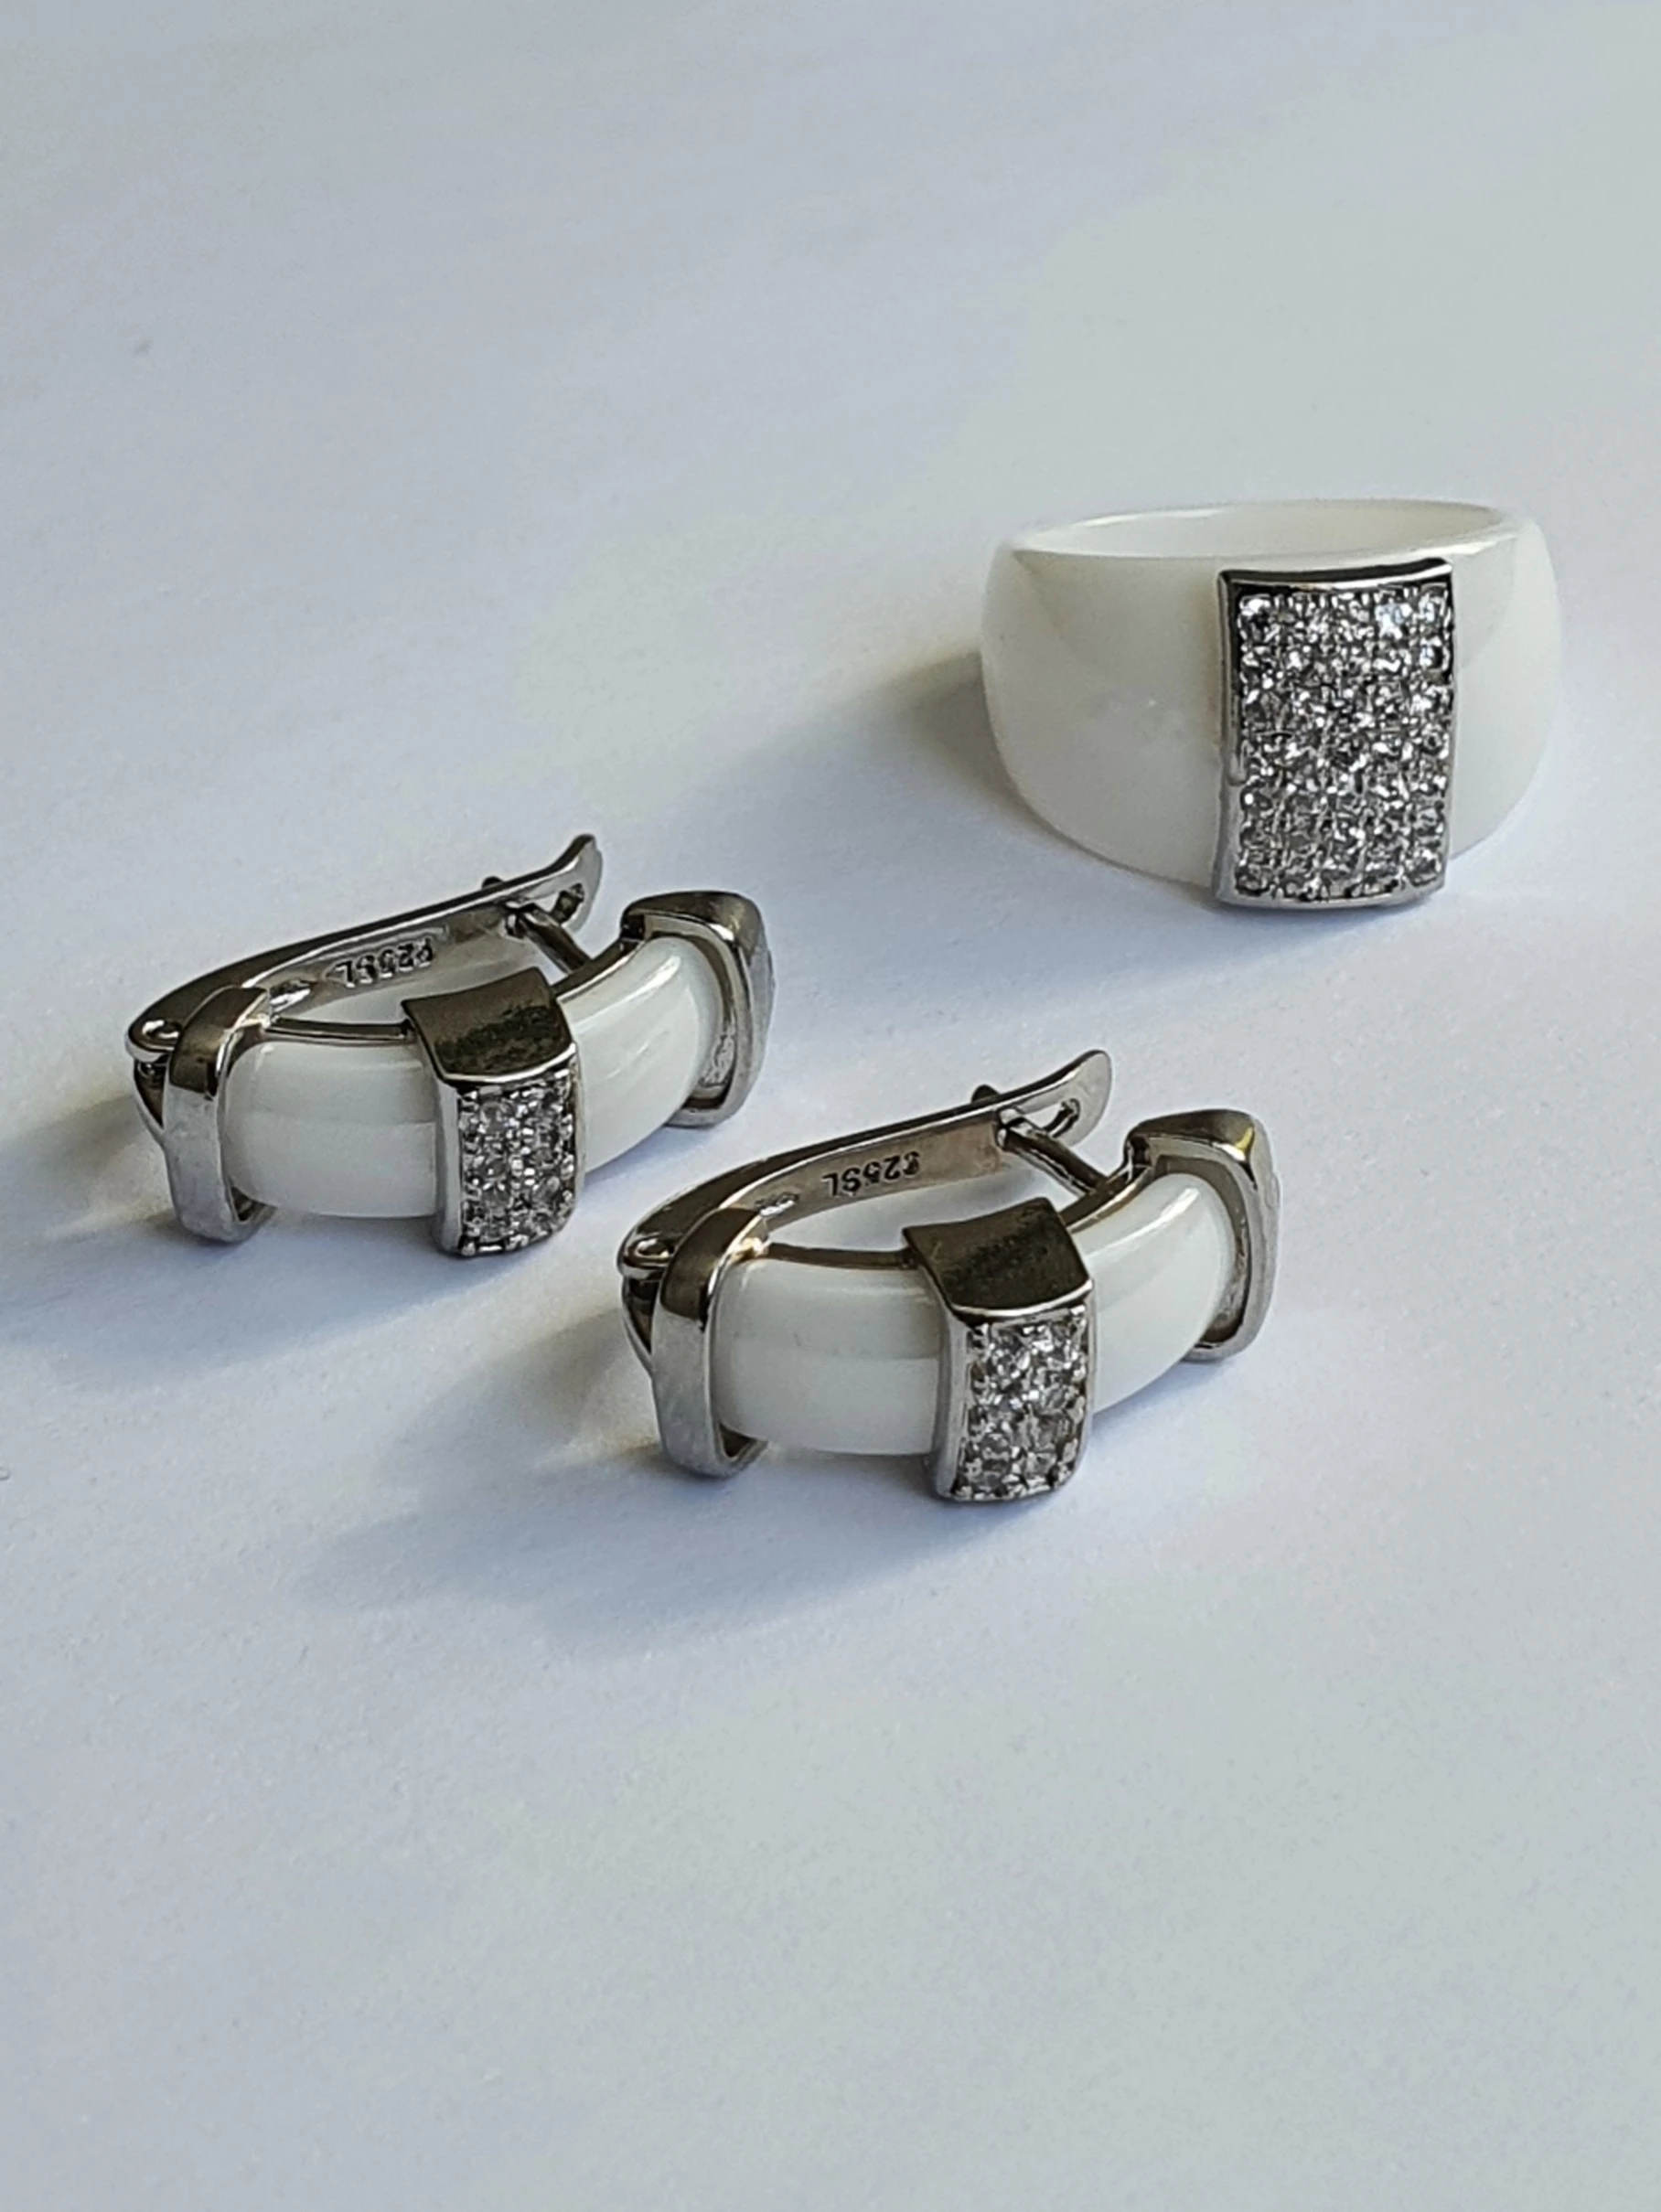 Проба сл. Кольцо 925 пробы SL. Наборы кольцо и серьги из керамики. SL 925 проба. 925 SL проба серебра серьги Узбекистане.